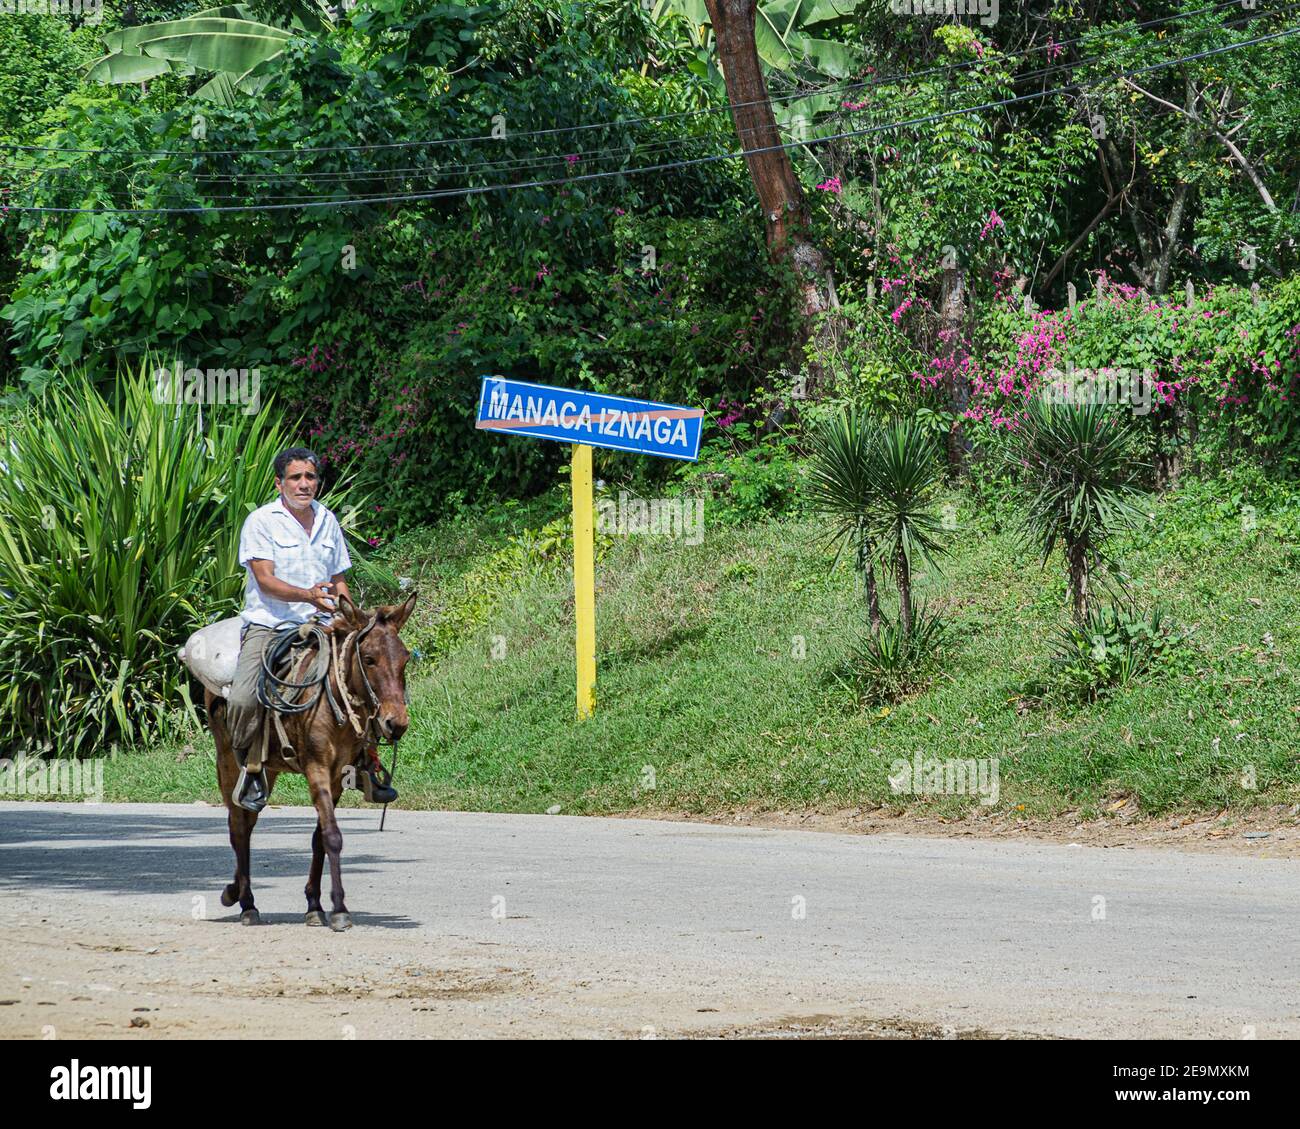 Ein Mann auf einem Pferd im Valle de los Ingenios / Tal der Zuckermühlen bei Trinidad, Sancti Spíritus, Kuba Stockfoto